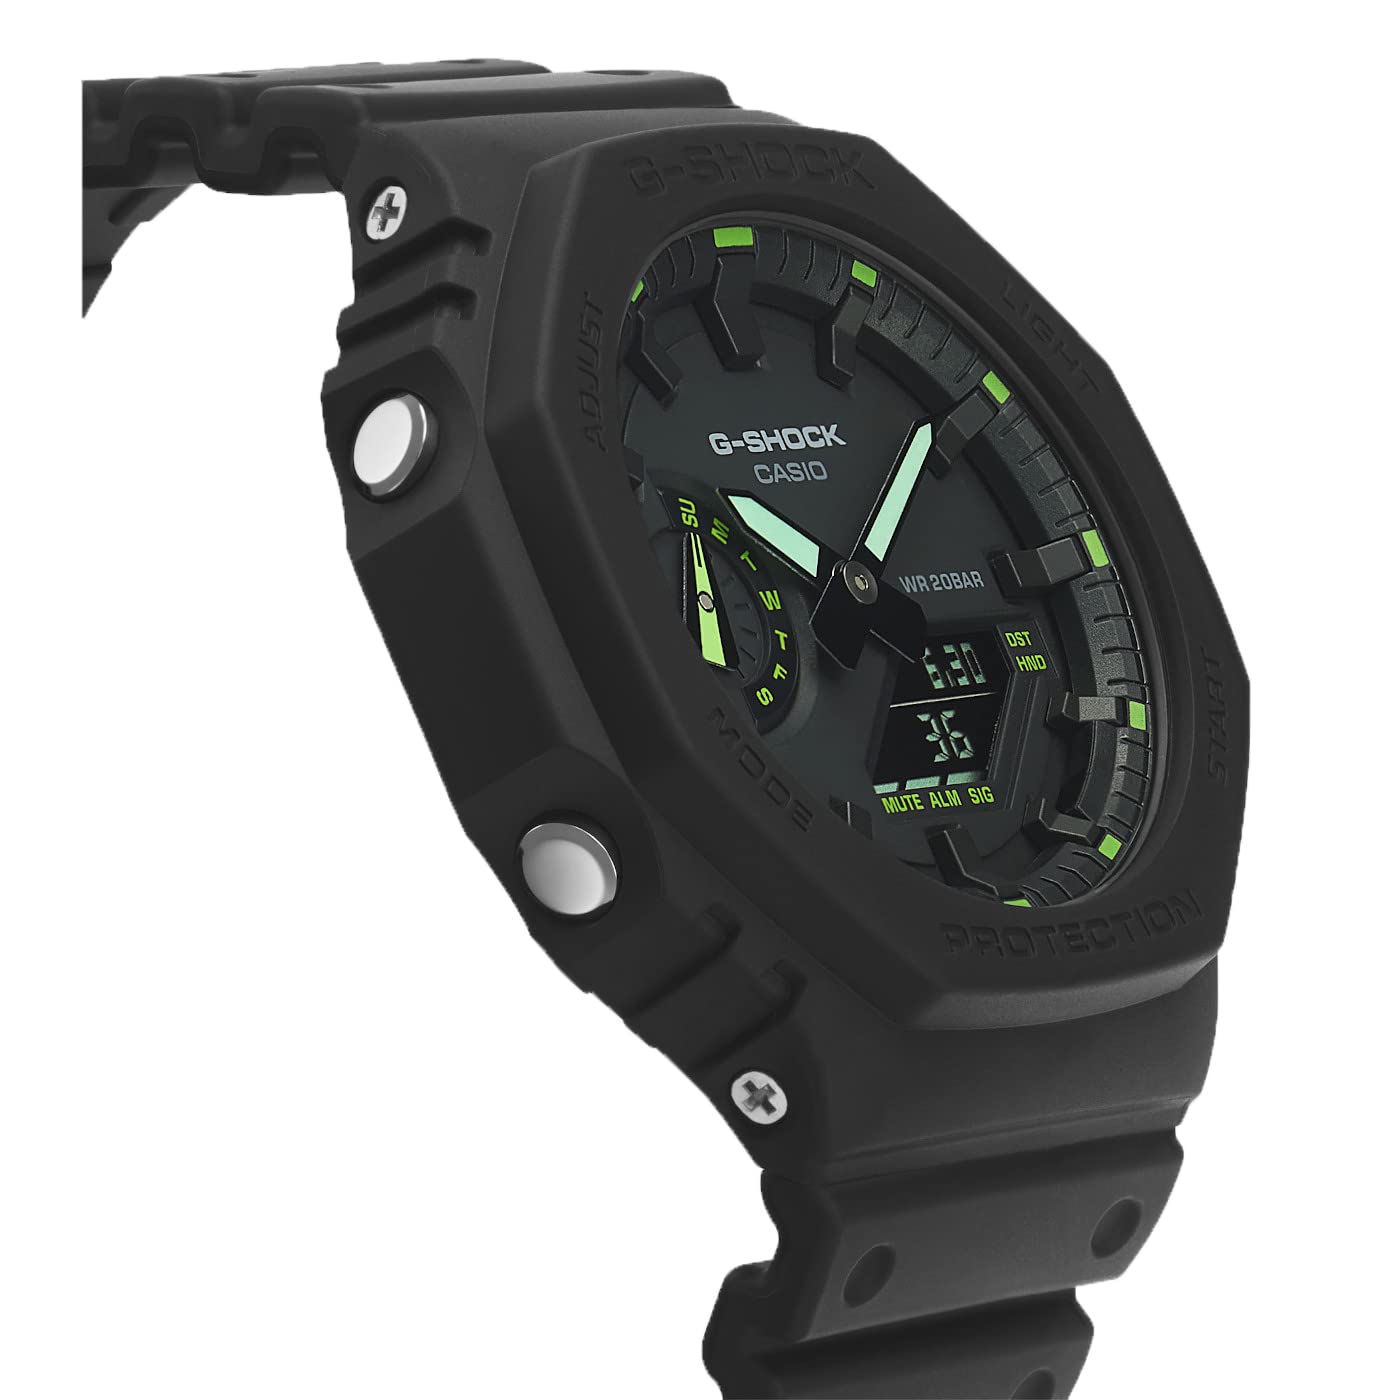 Casio Watch GA-2100-1A3ER